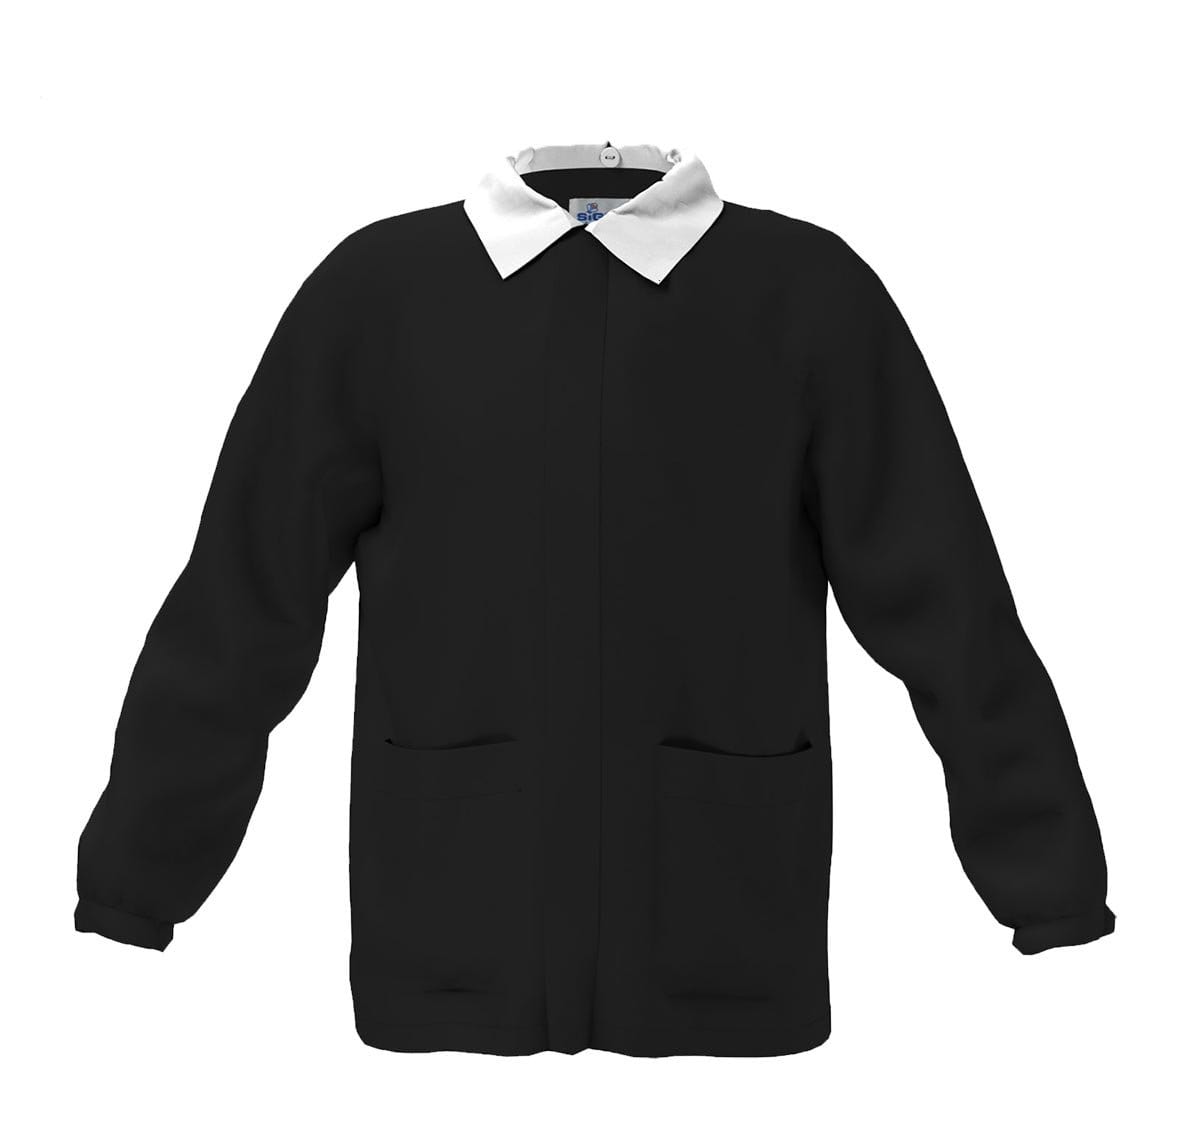 casacca nera per bambini scuola marchio siggi grembiuli